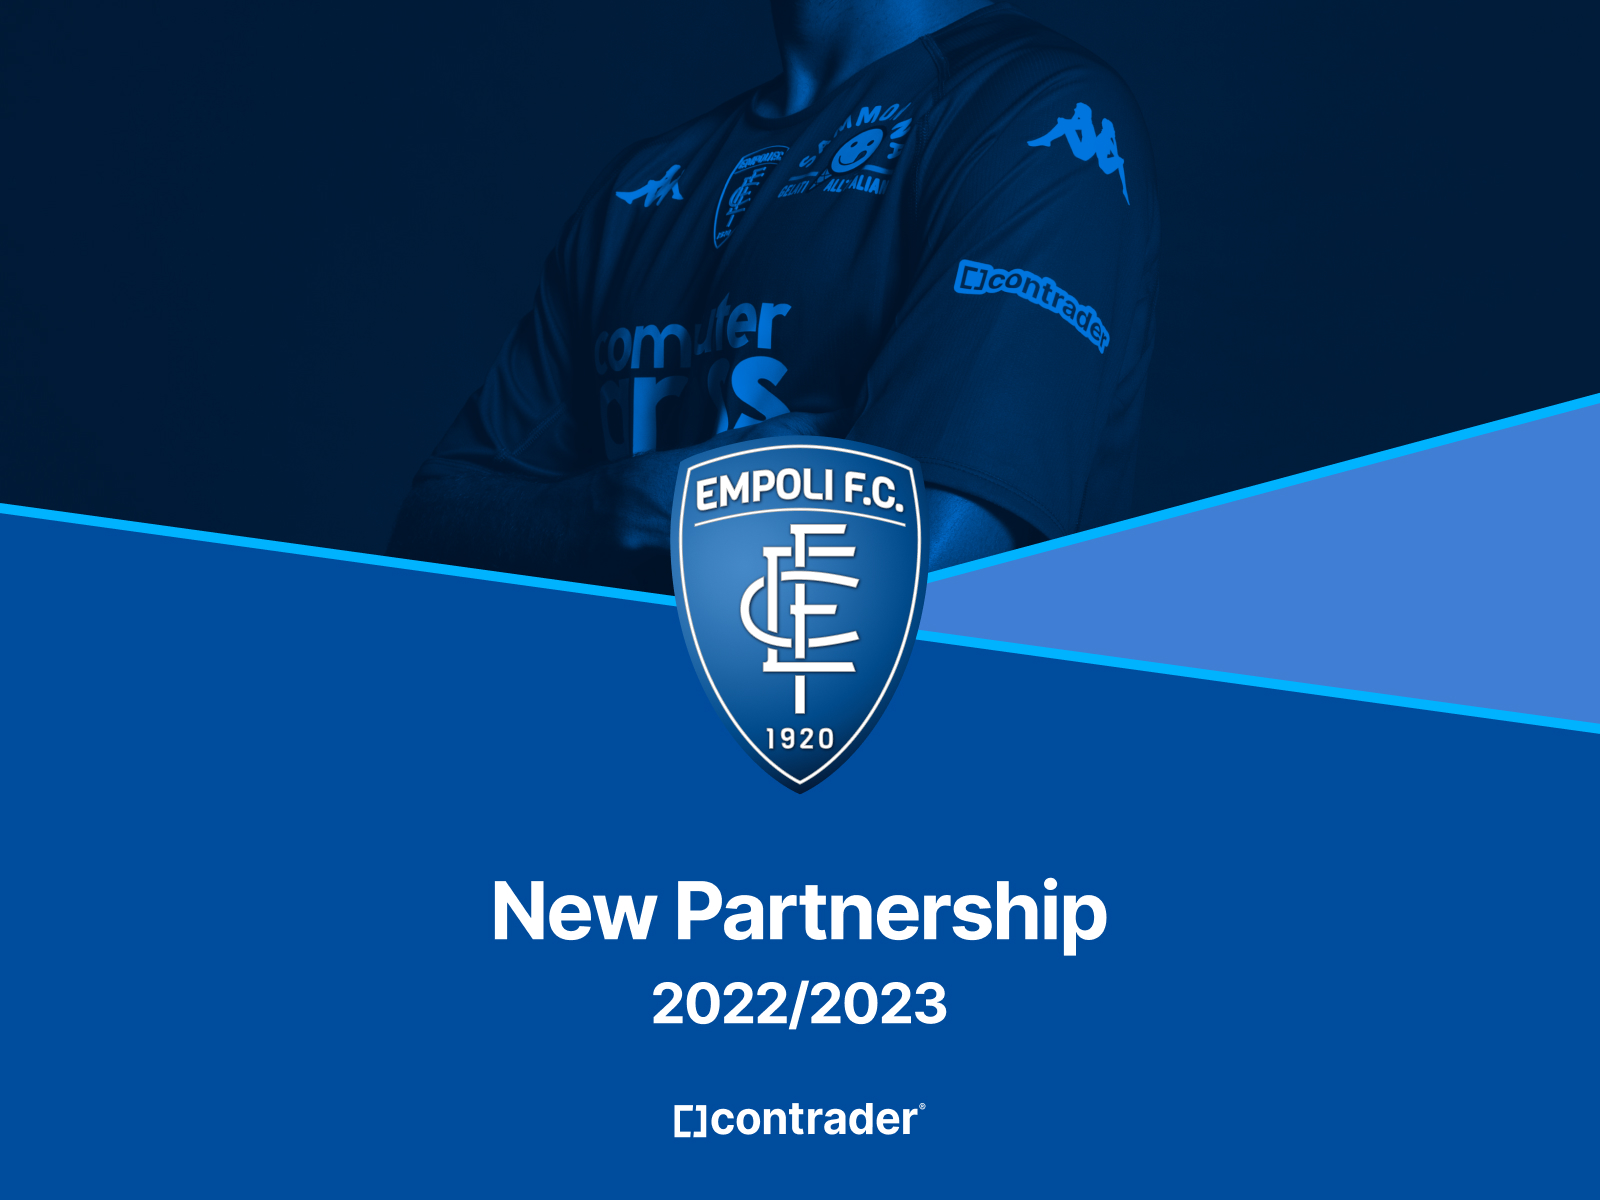 Contrader ed Empoli FC rinnovano l’accordo di sponsorizzazione.